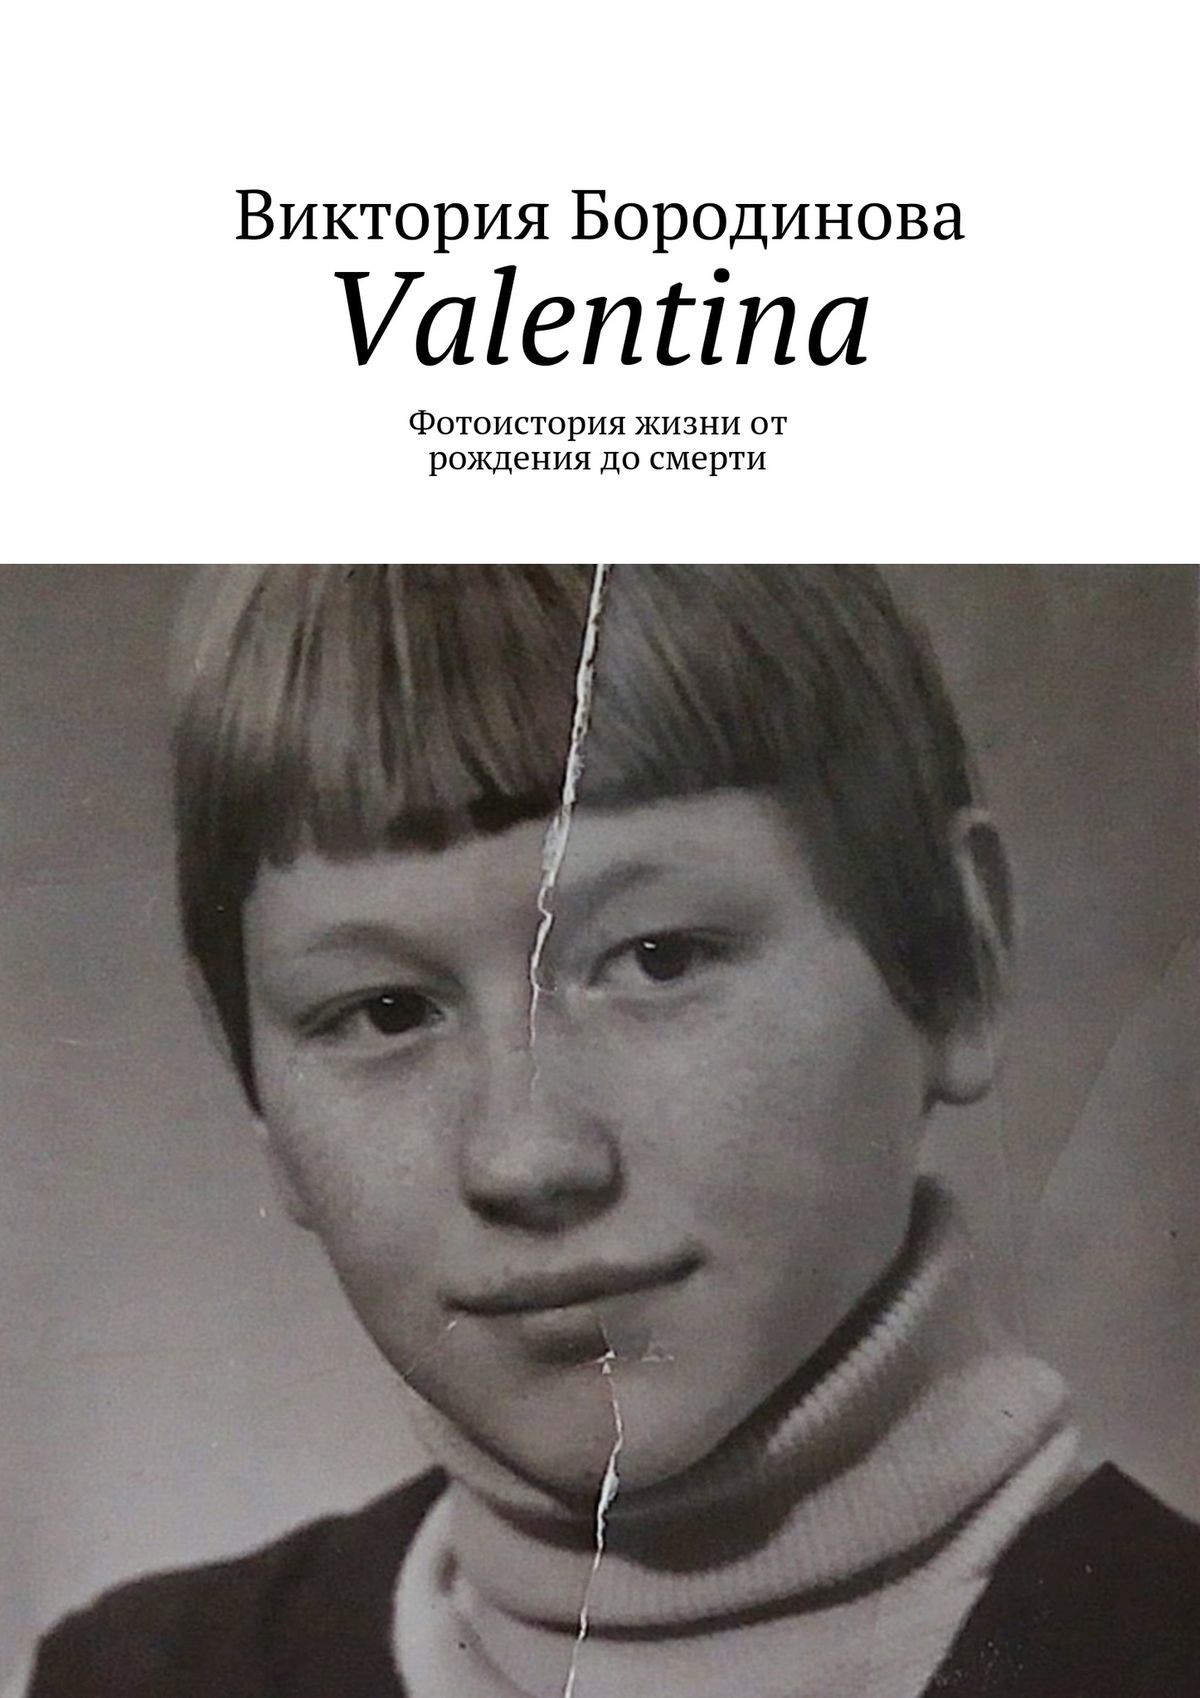 Valentina.Фотоистория жизни от рождения до смерти